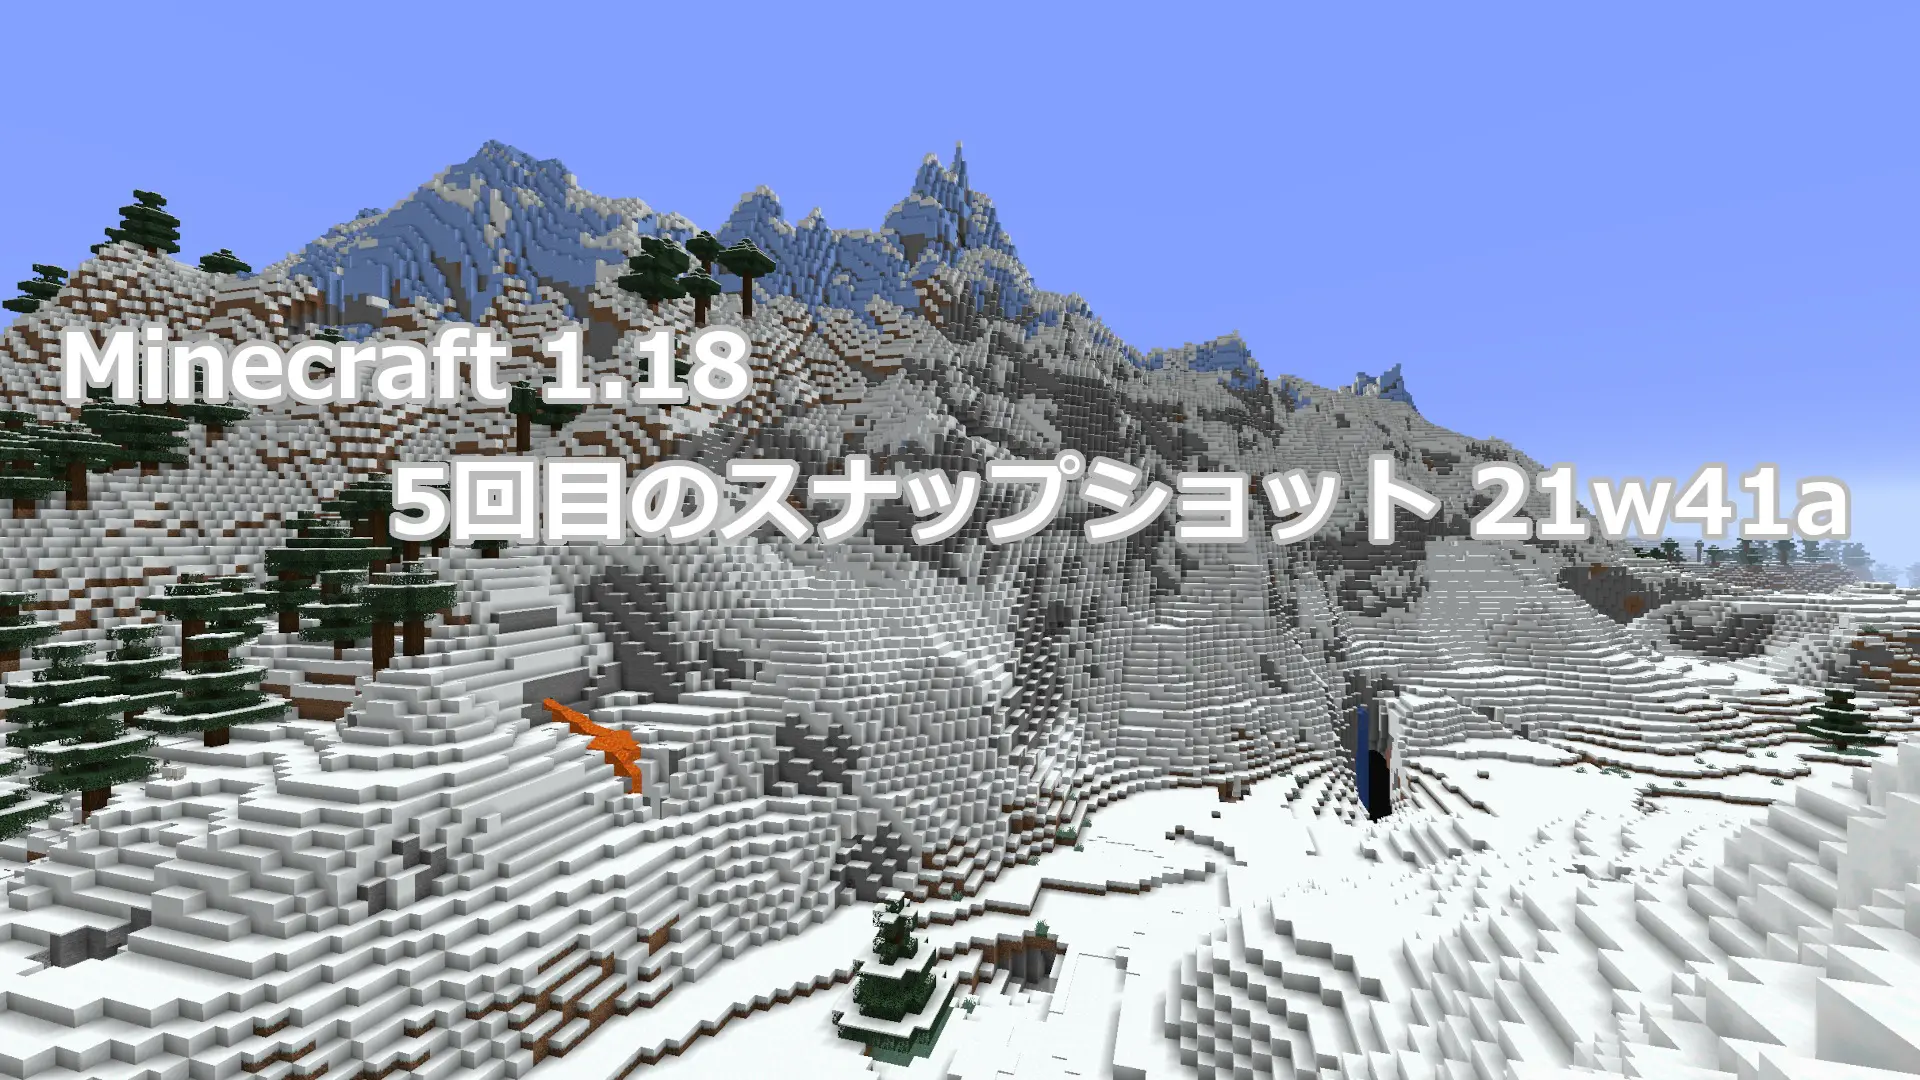 テクスチャと洞窟生成の変更した5回目のスナップショット21w41aリリース情報 Minecraft 1 18 まいんくらふと みっくすじゅーす